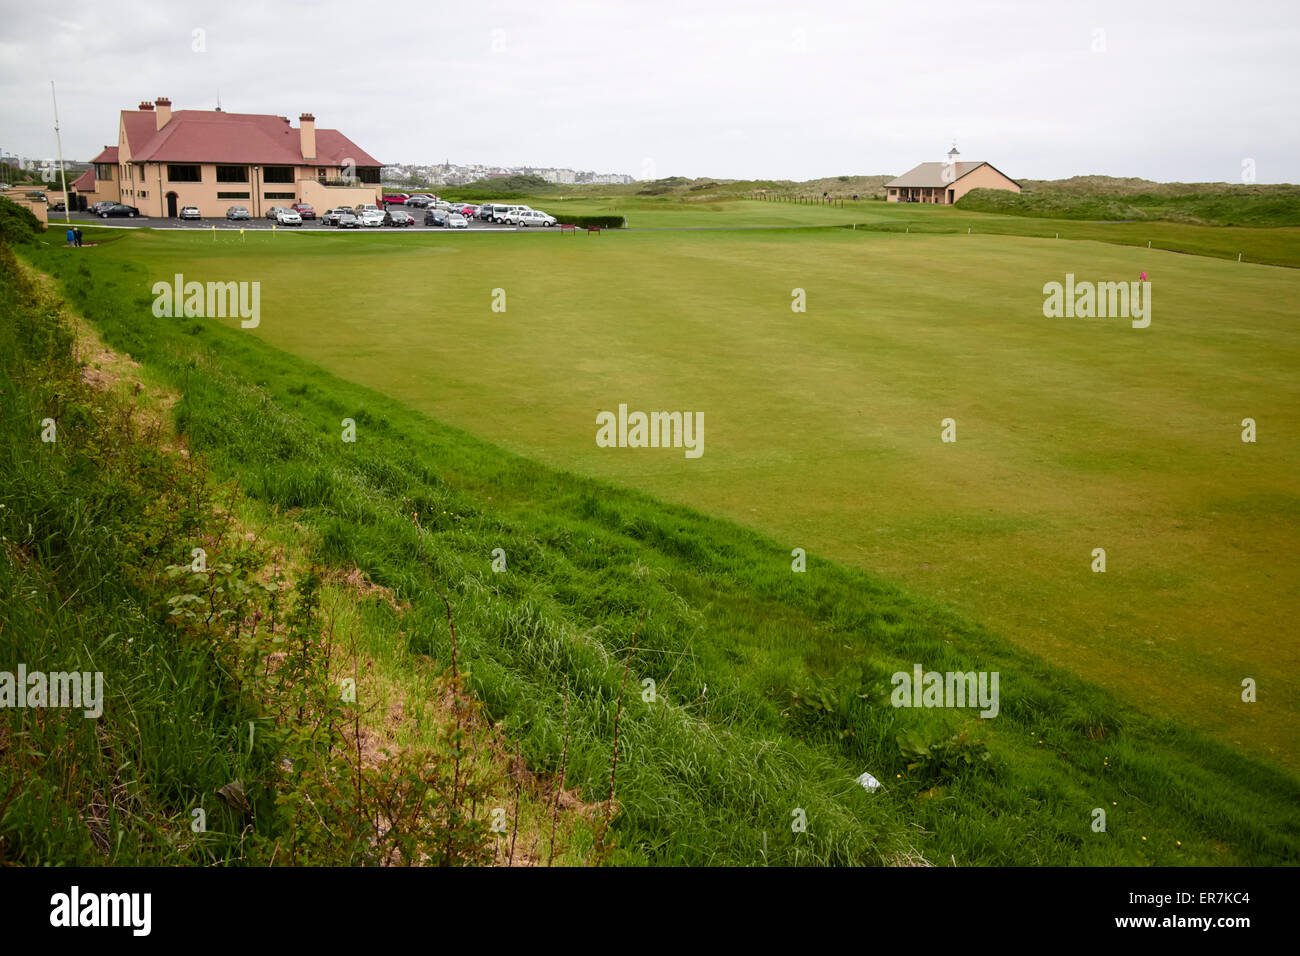 Le Club de golf Royal Portrush vert de pratique ainsi qu'un pavillon d'Irlande Banque D'Images